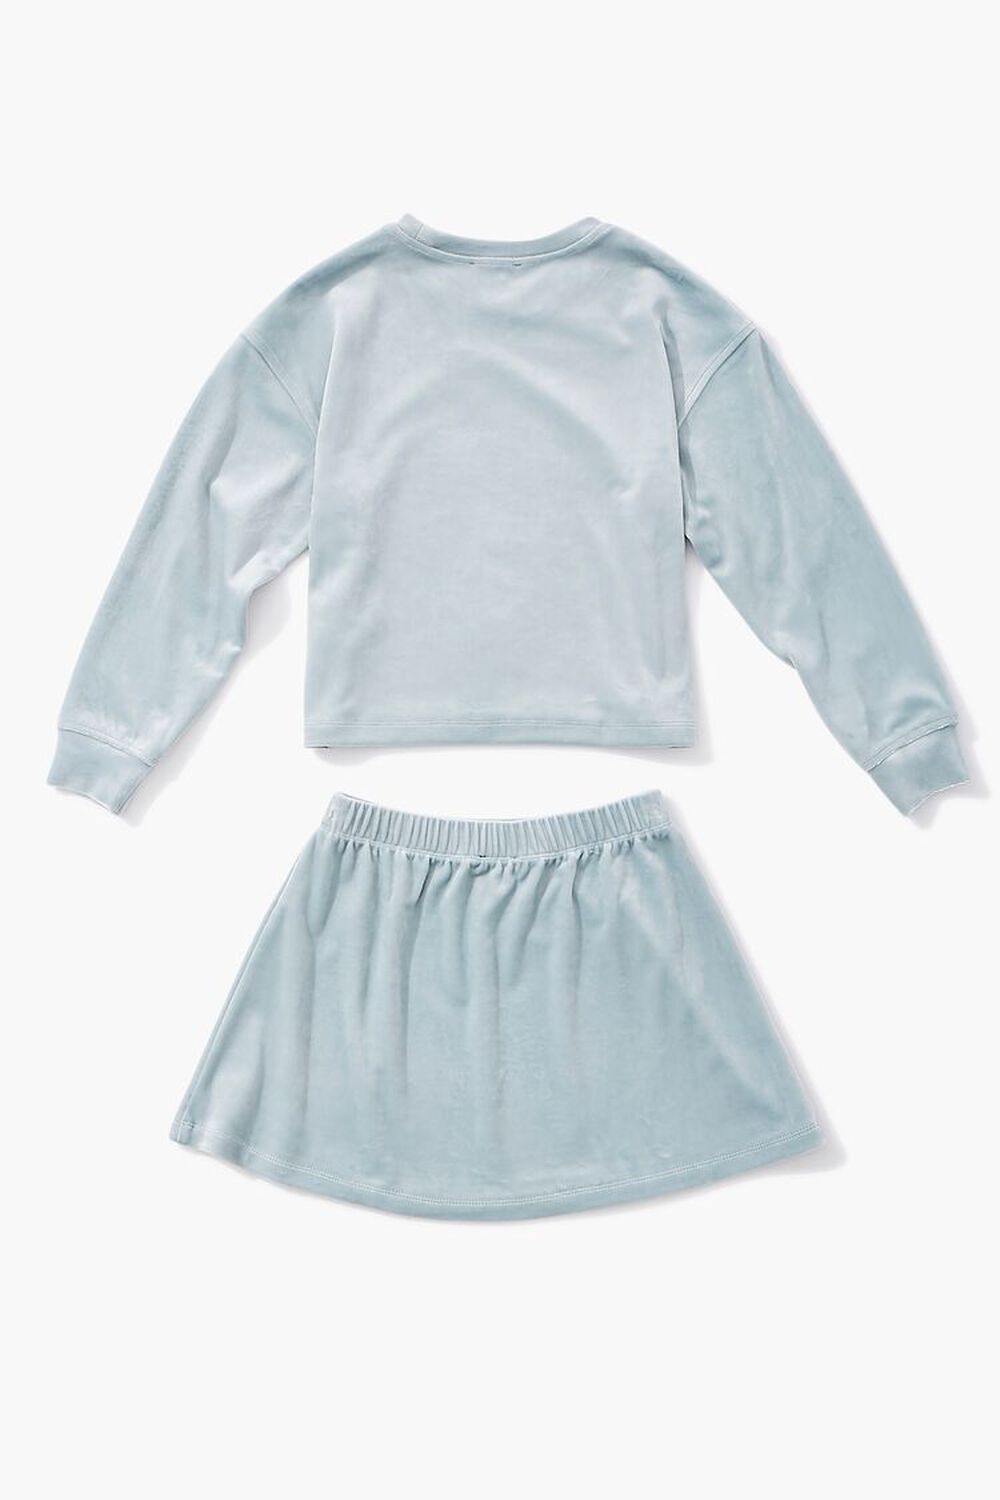 BLUE Girls Velvet Tee & Skirt Set (Kids), image 2